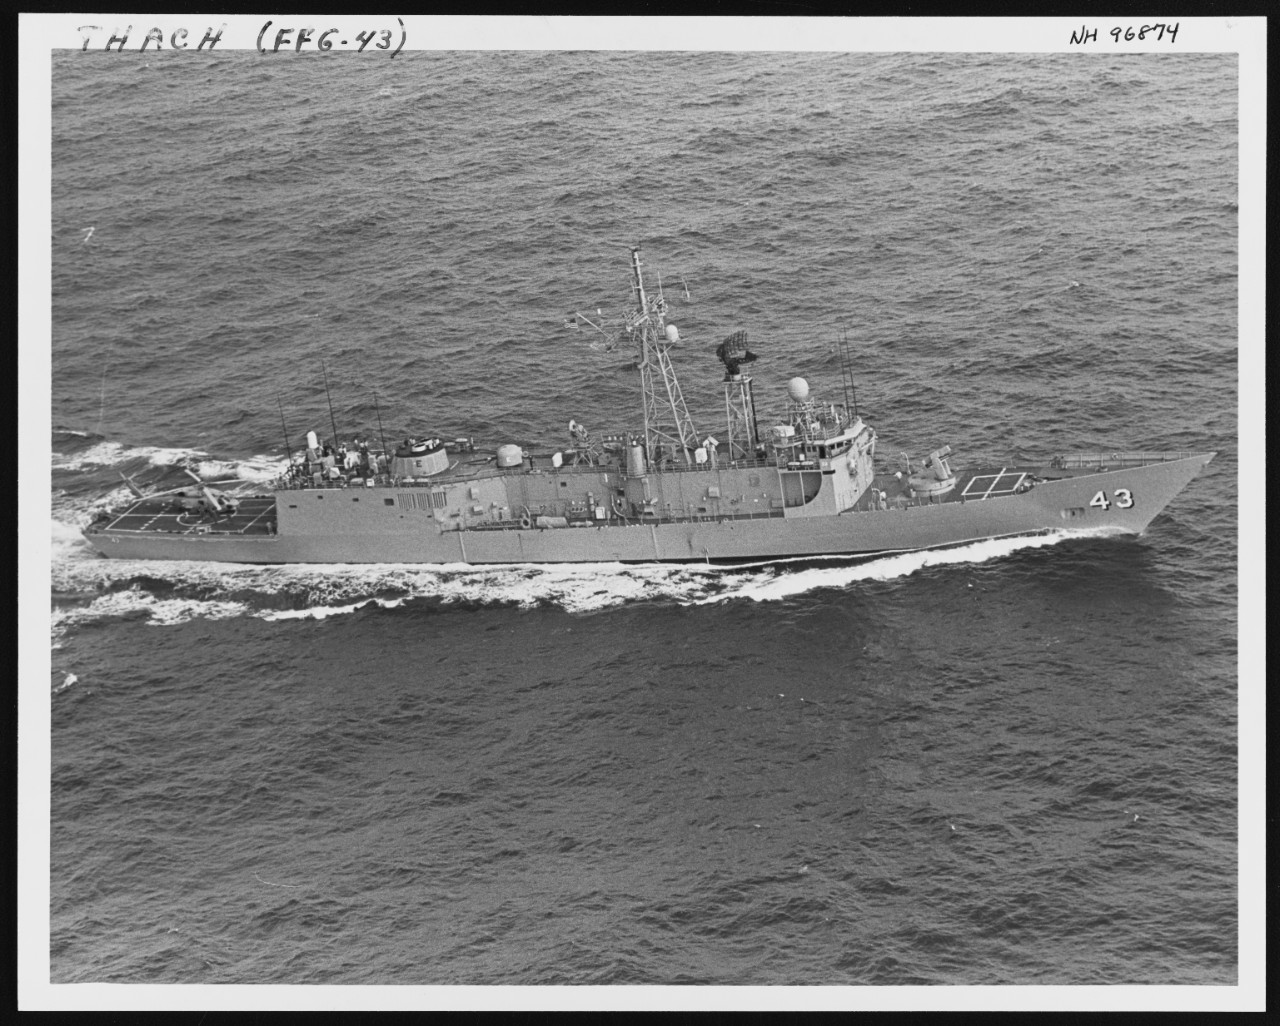 Photo #: NH 96874  USS Thach (FFG-43)